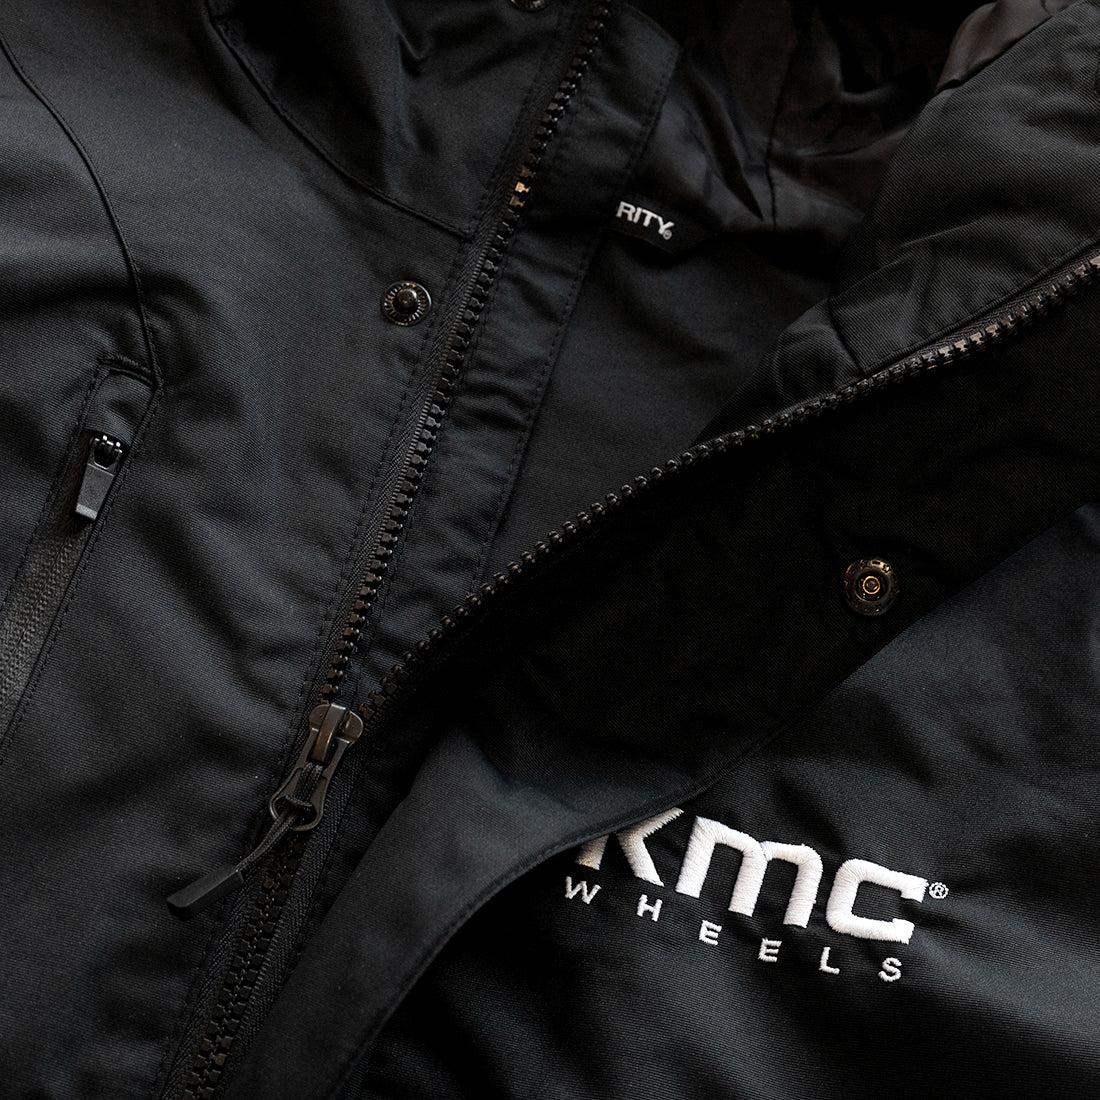 KMC Jacket